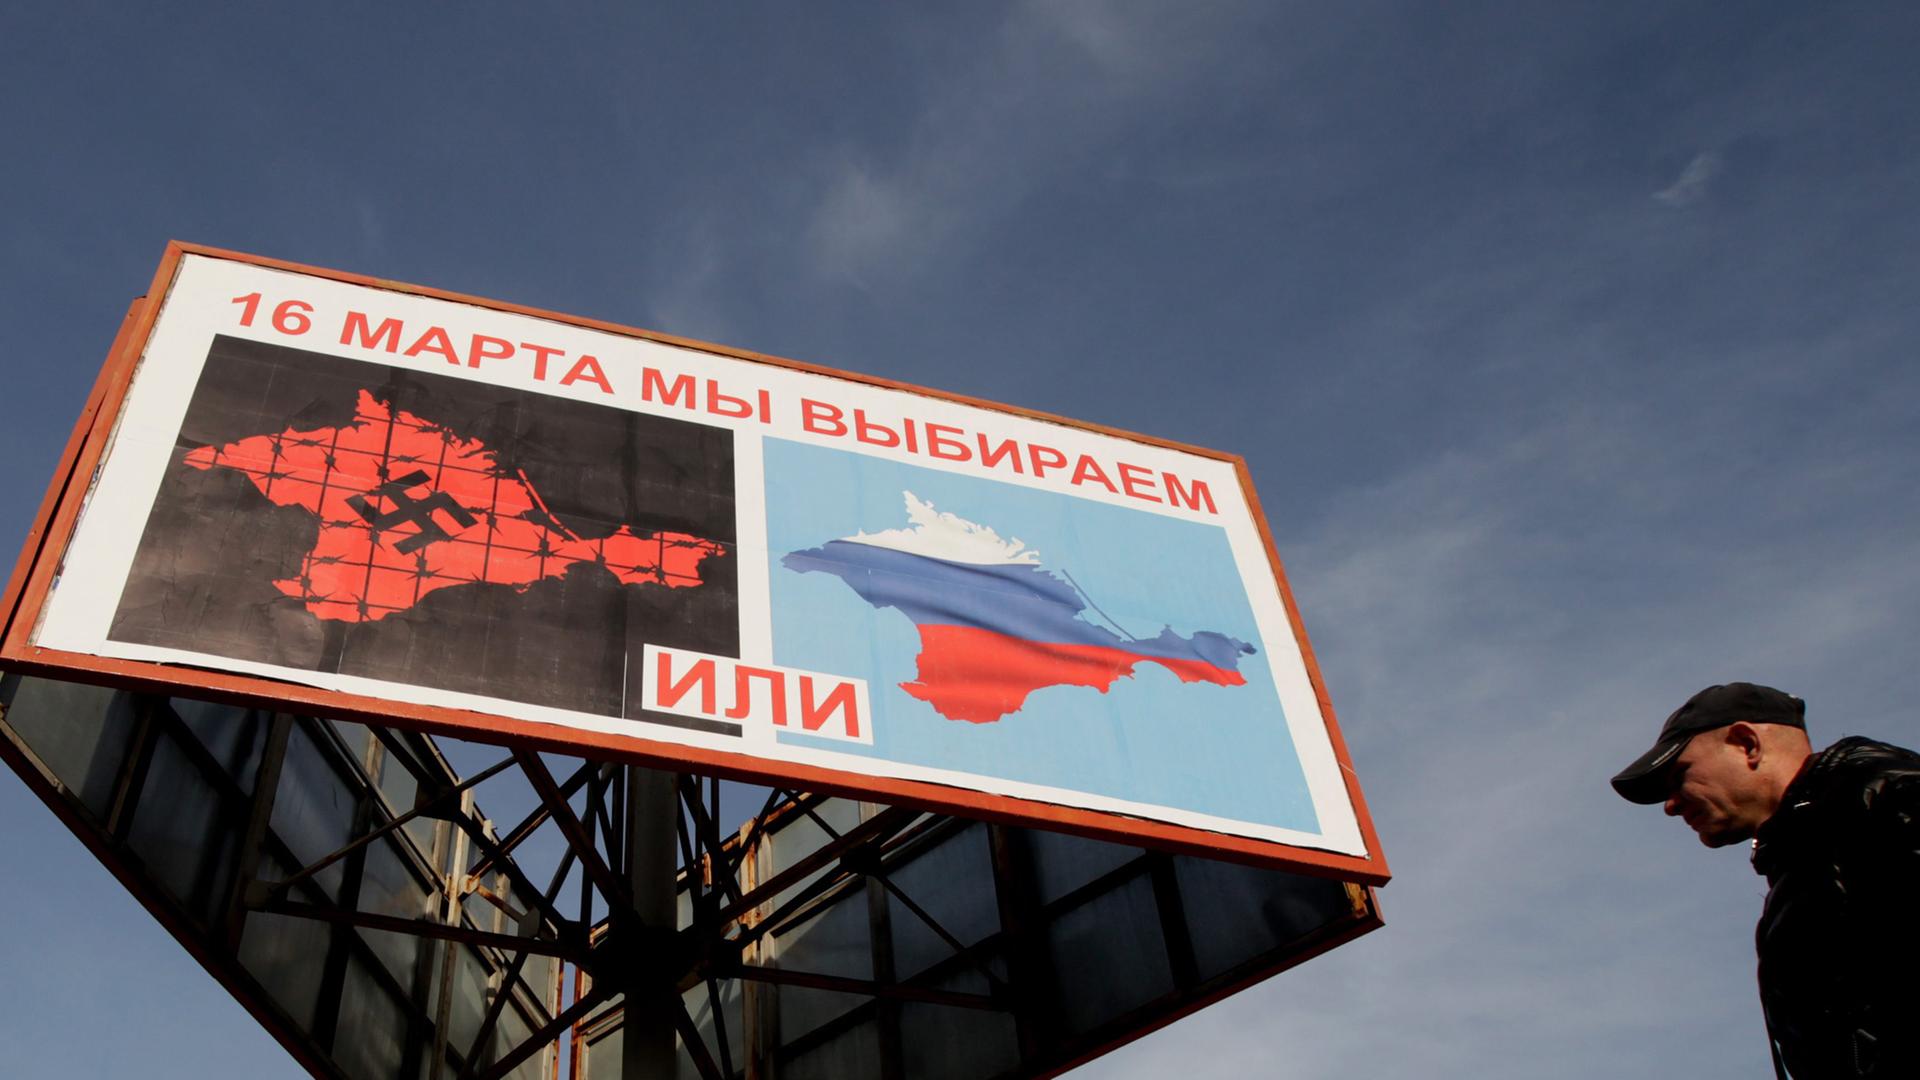 Plakate in Sevastopol rufen zur Teilnahme am Referendum auf. Ein Mann geht darunter vorbei.